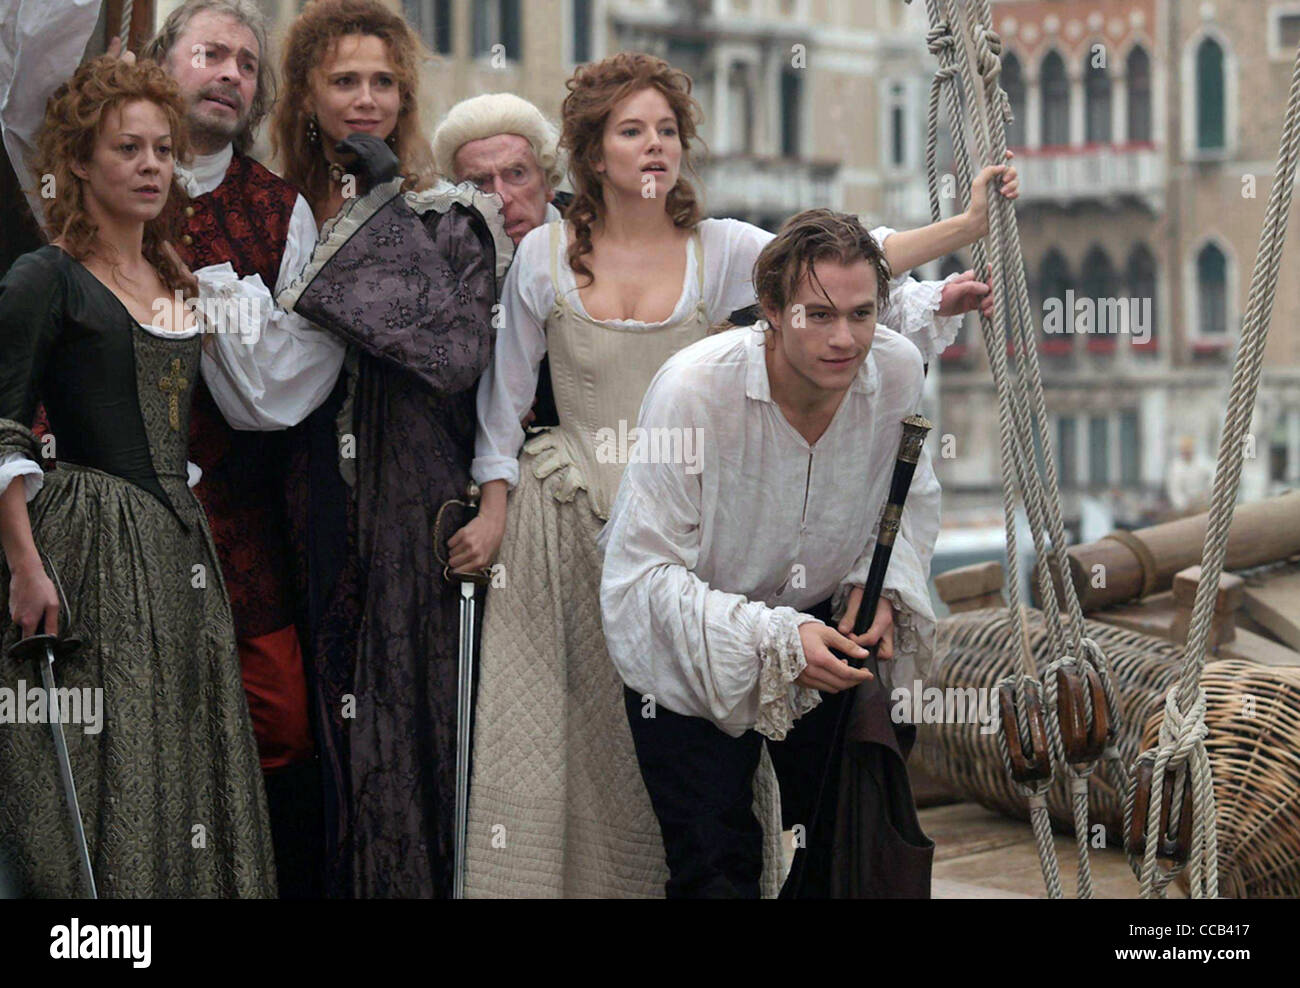 CASANOVA 2005 Touchstone película con Heath Ledger en derecho como Casanova Foto de stock